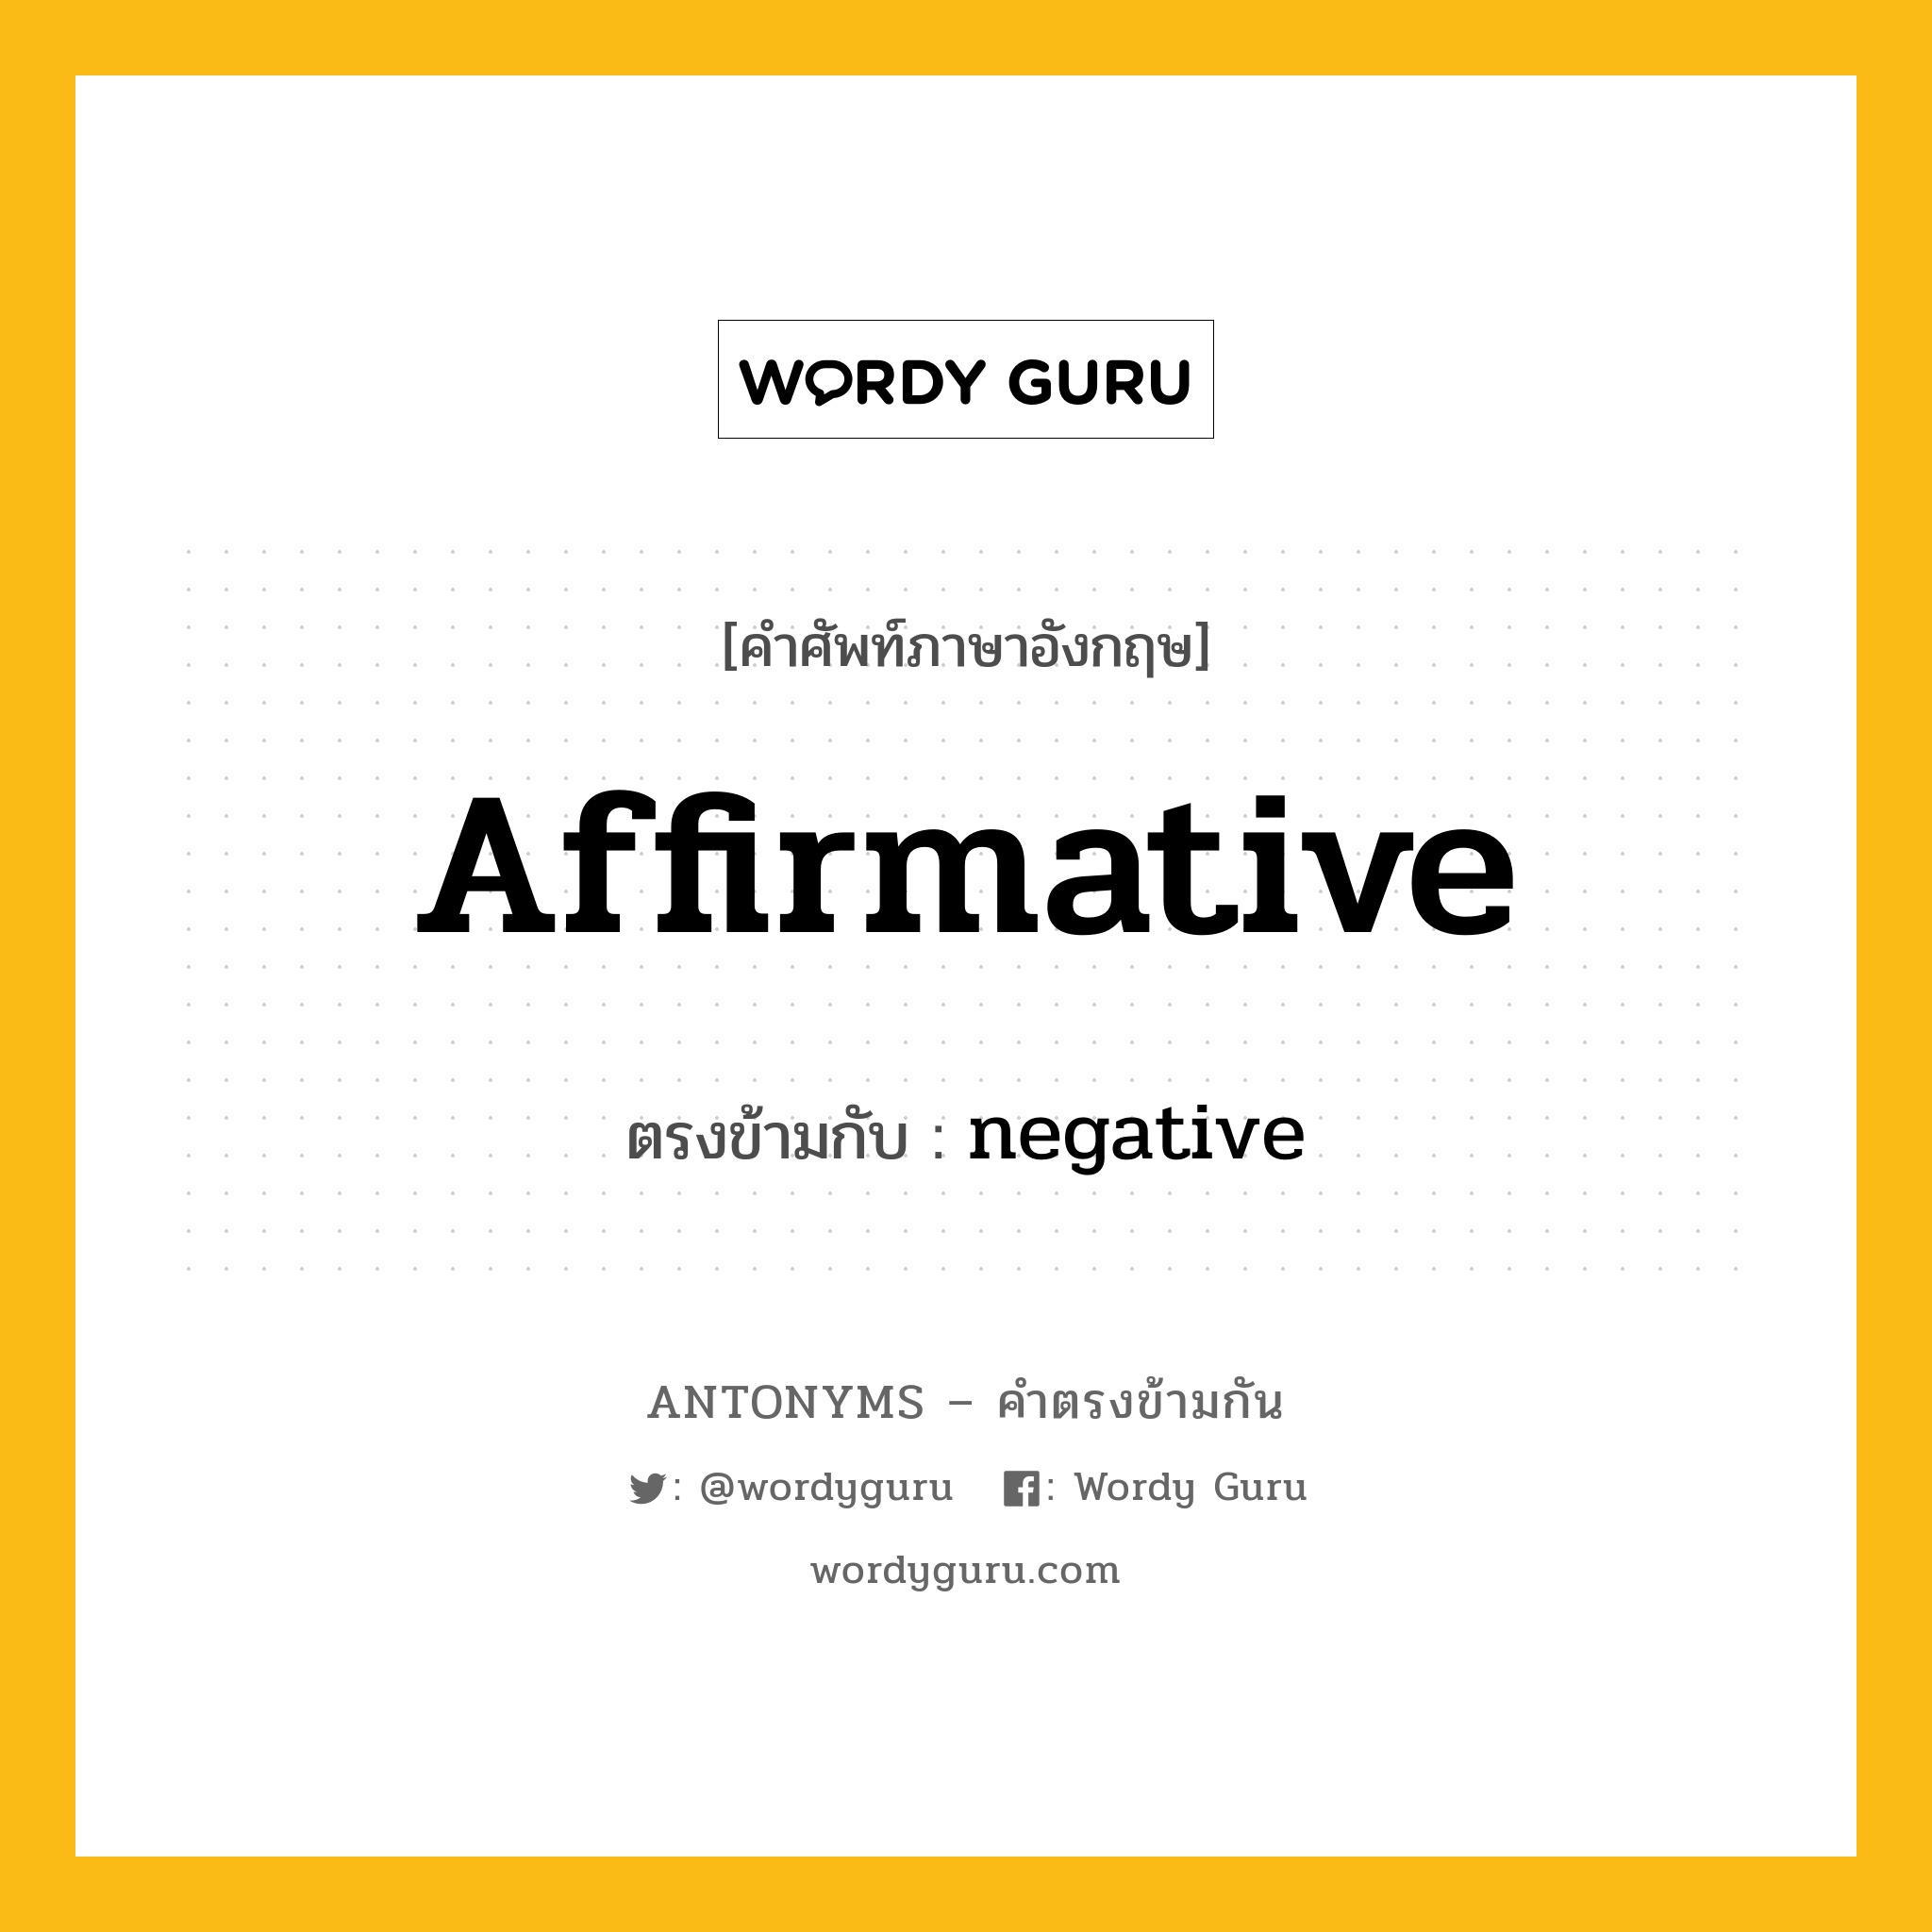 affirmative เป็นคำตรงข้ามกับคำไหนบ้าง?, คำศัพท์ภาษาอังกฤษที่มีความหมายตรงข้ามกัน affirmative ตรงข้ามกับ negative หมวด negative